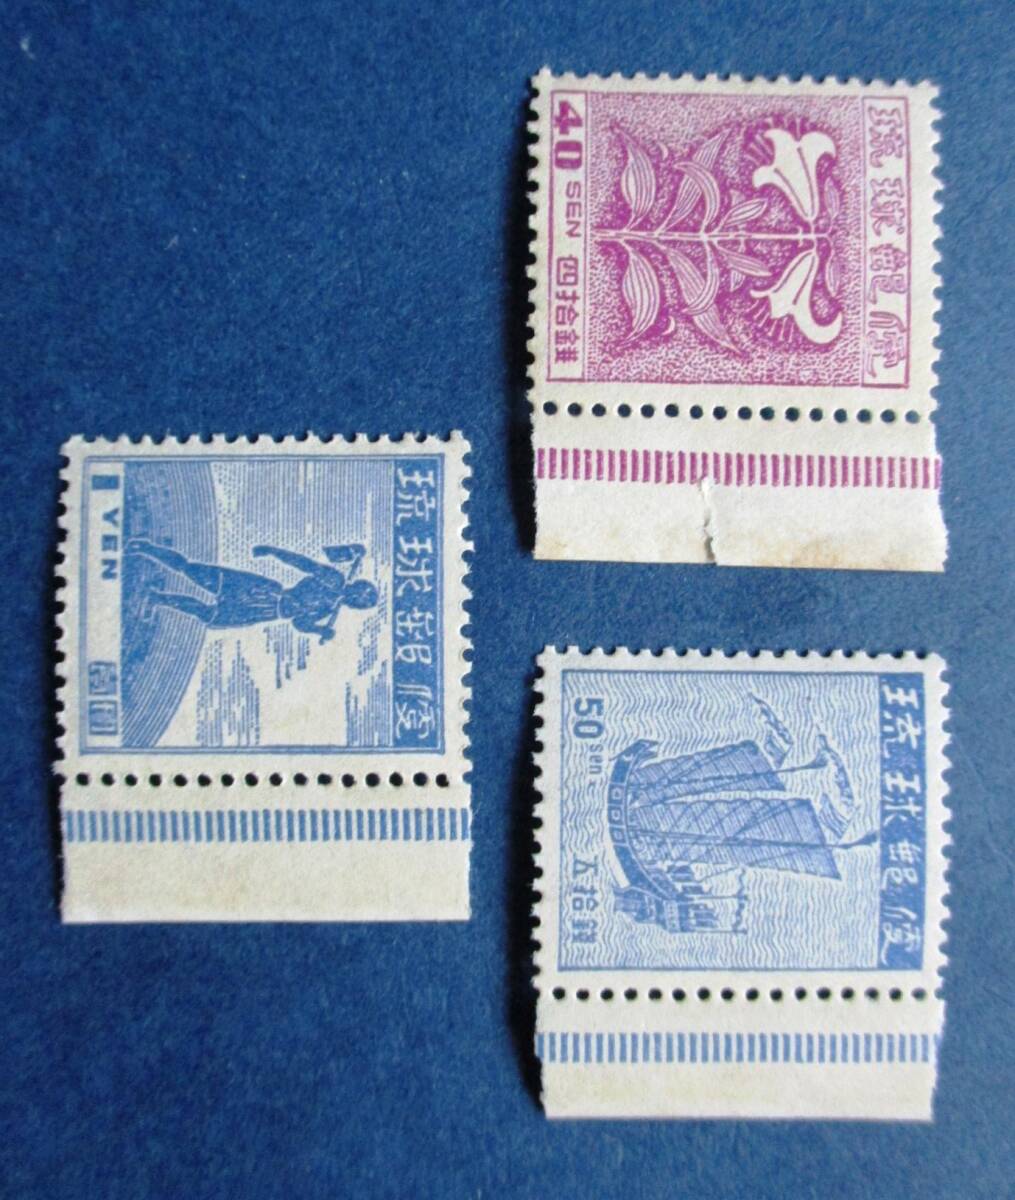 沖縄切手・琉球切手 第１次普通切手再販7種完右ミミ付き X22 ほぼ美品ですが、40銭切手のミミに破れがあります。画像参照してください。の画像5